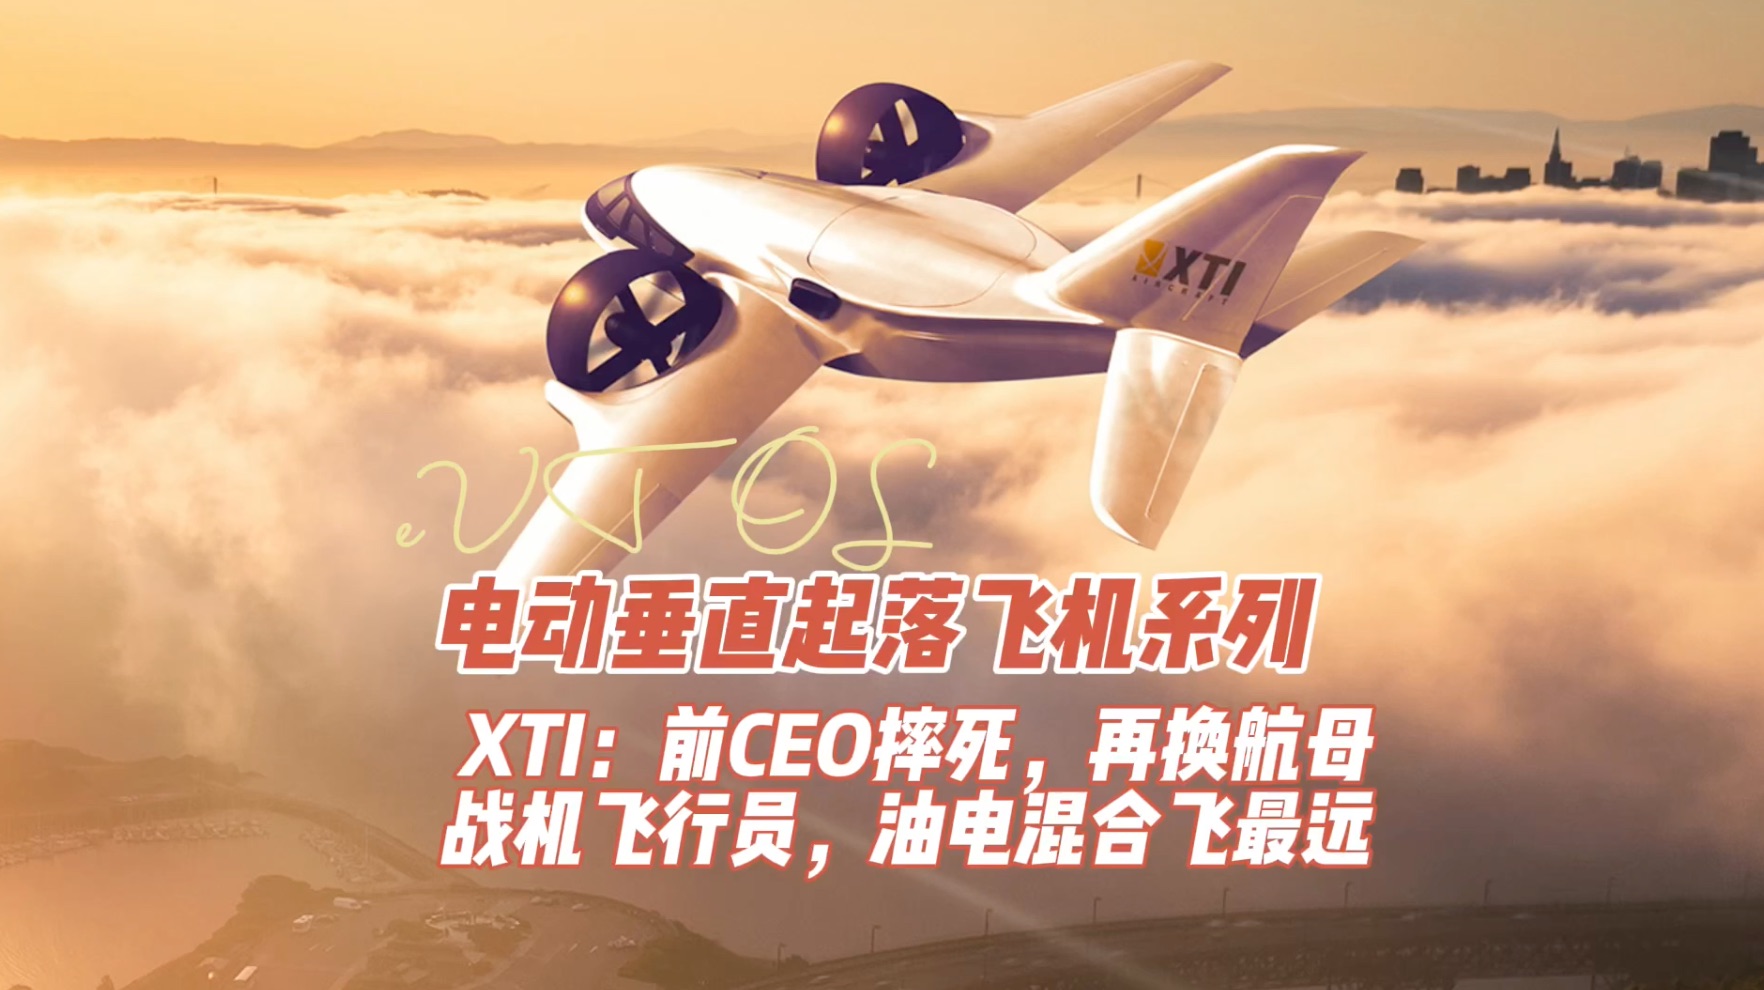 XTI电动飞机：续航2400公里，每公里成本1元